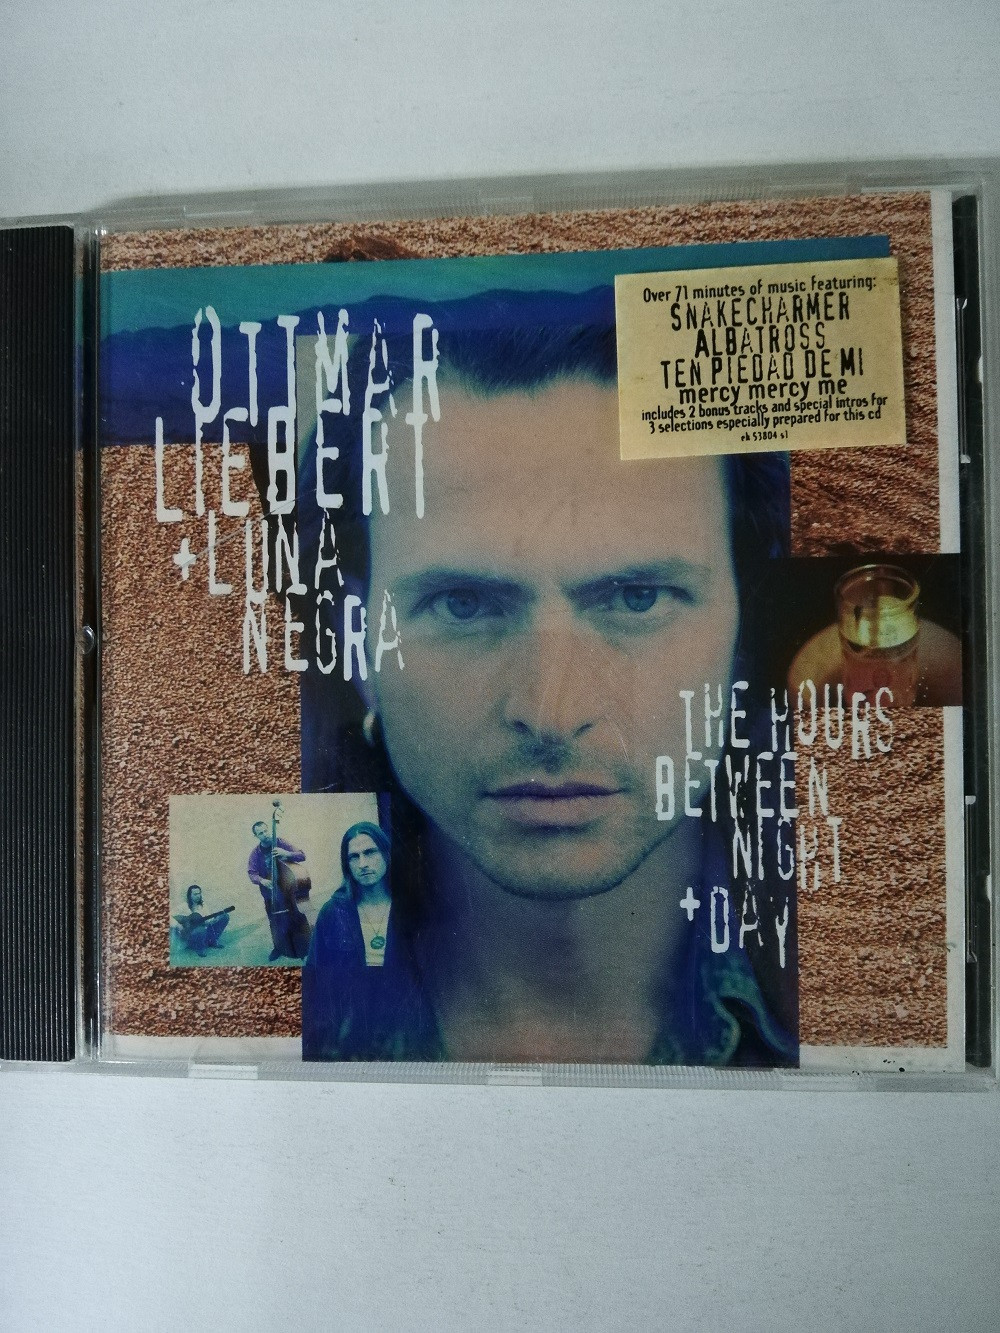 Imagen CD OTTMAN LIEBERT + LUNA NEGRA - THE HOURS BETWEEN NIGHT + DAY